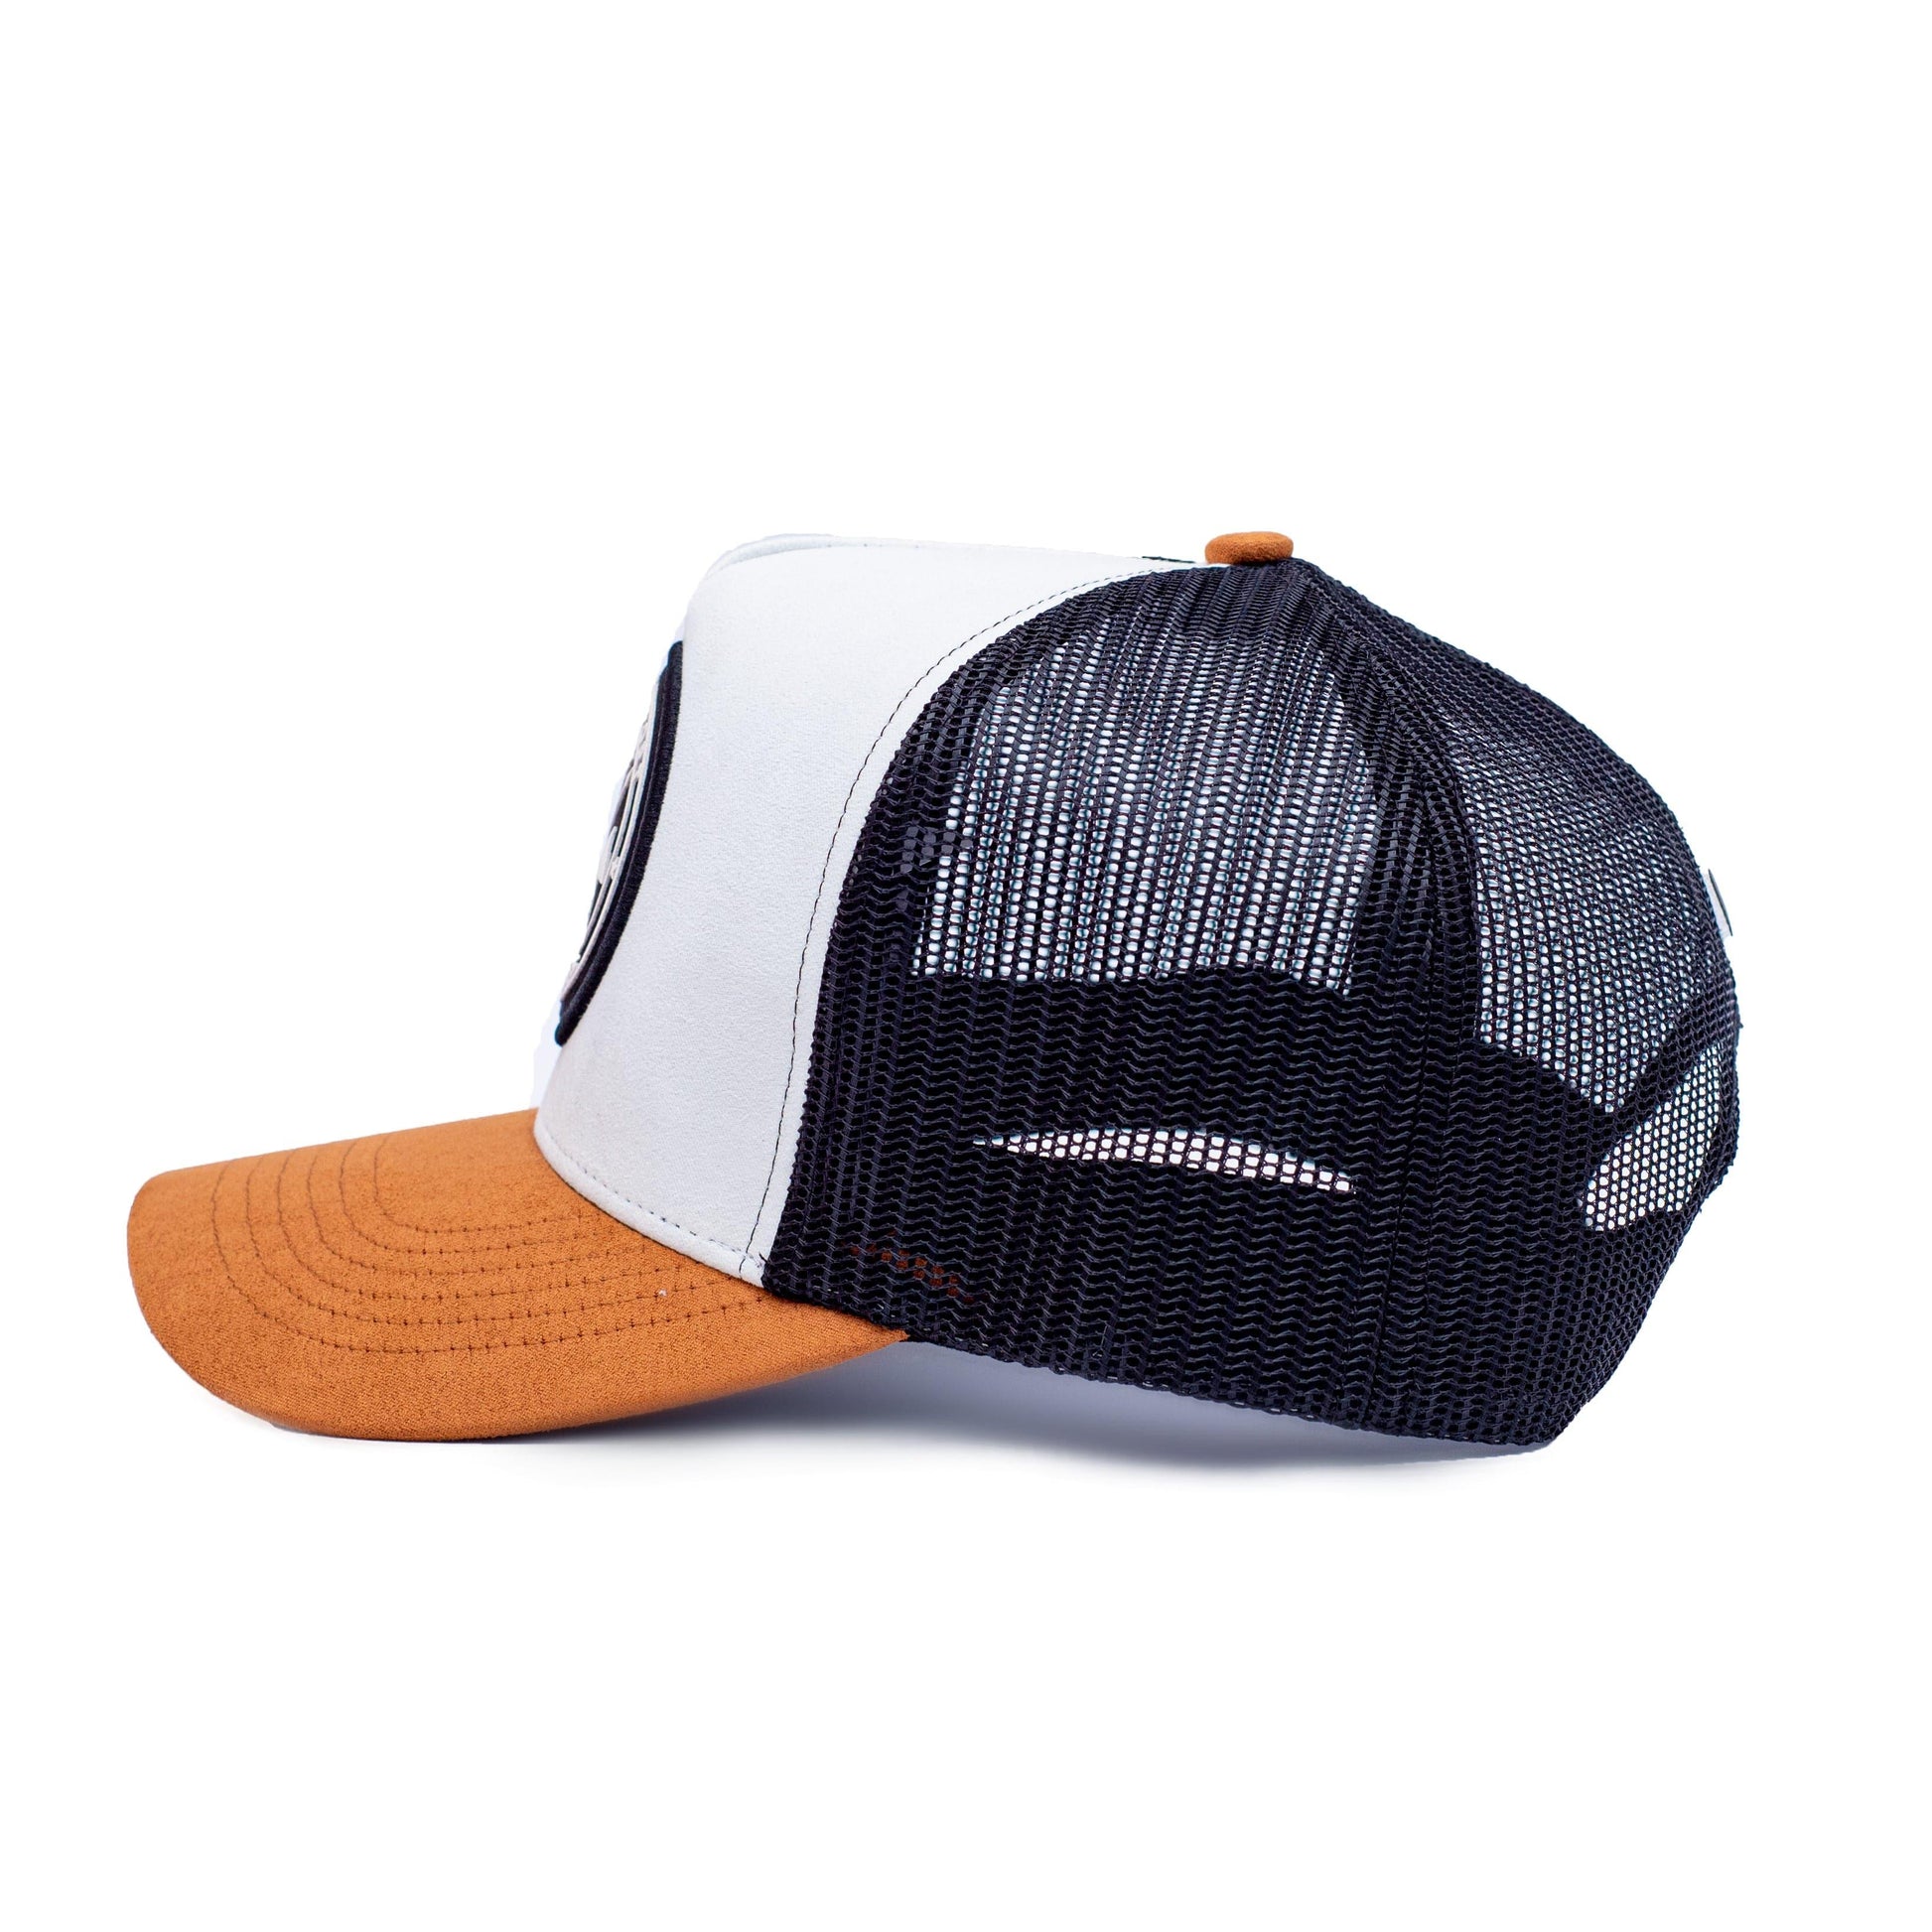 Black + White + Brown Trucker Hat | Original's | Urban Effort - Urban Effort